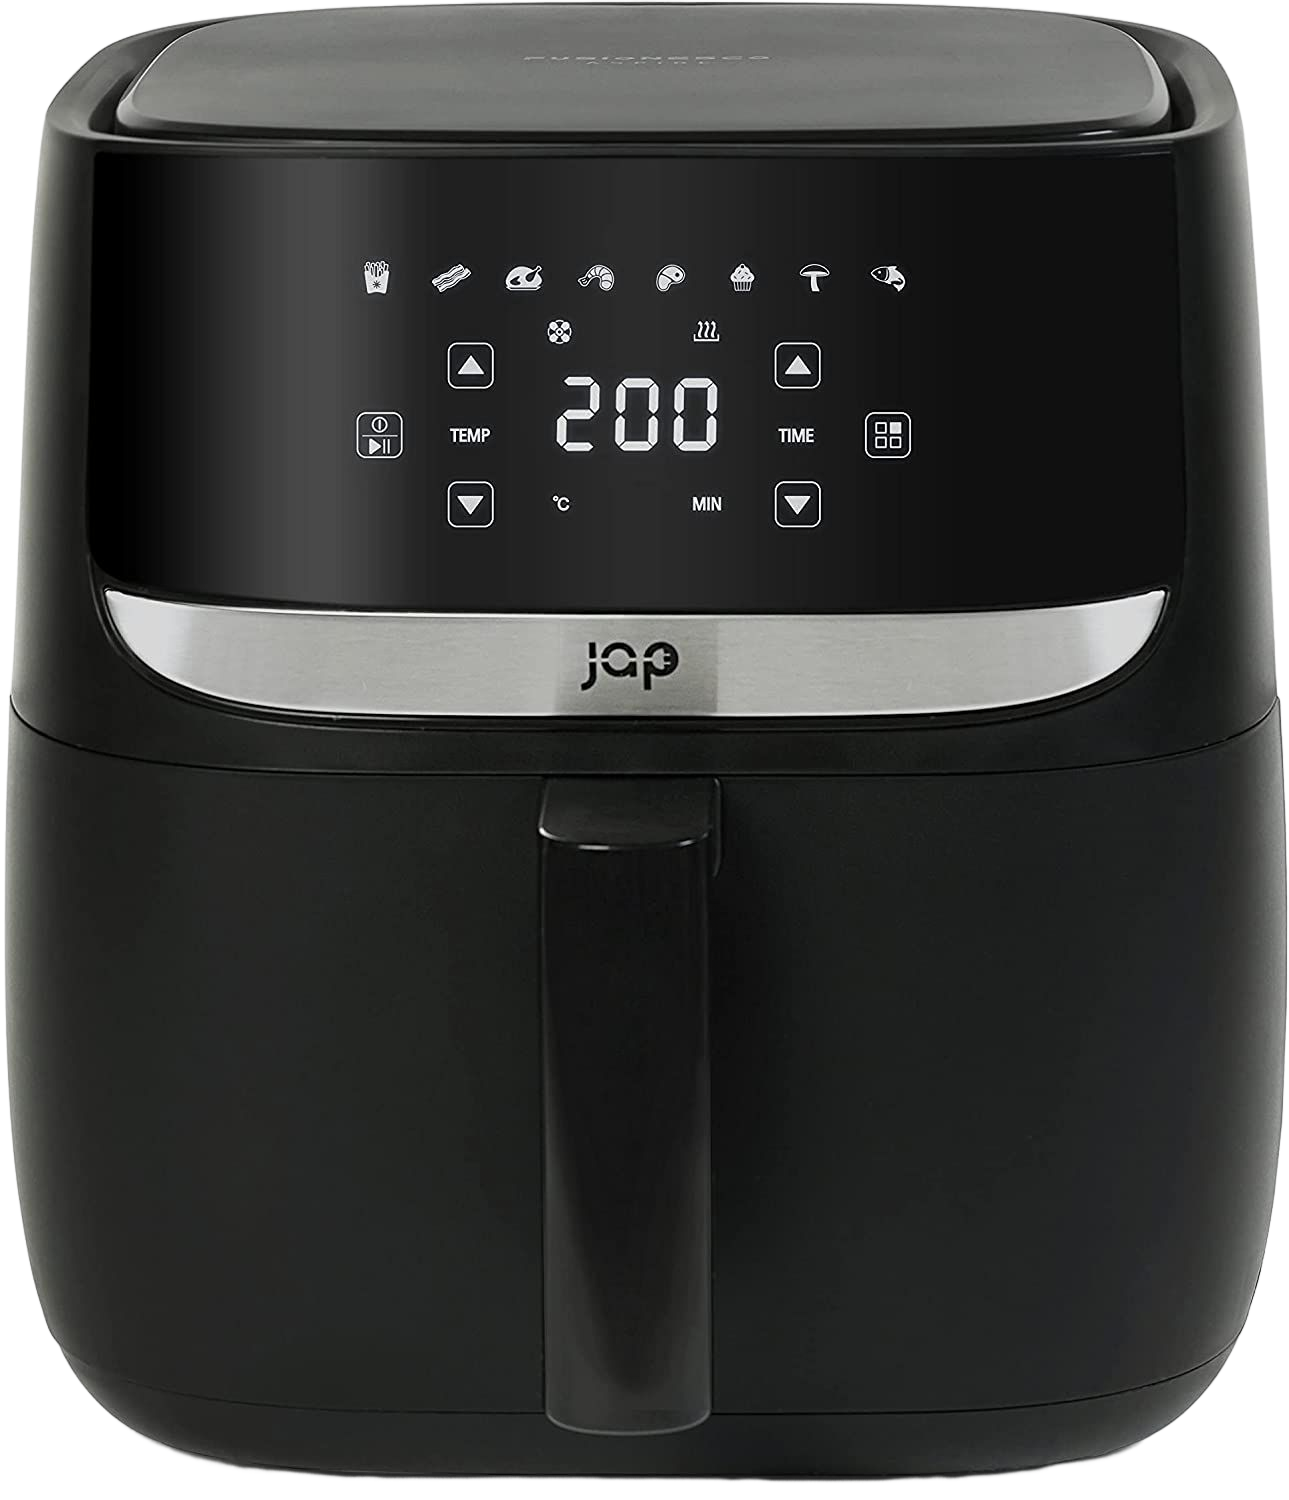 XXL JAP mit Air LED-Touchscreen XXL Schwarz APPLIANCES Airfryer 5,7L Power 8 - Fryer - Watt programmen Heißluftfritteuse Heißluftfritteuse 1700 1700W, Rezeptheft,